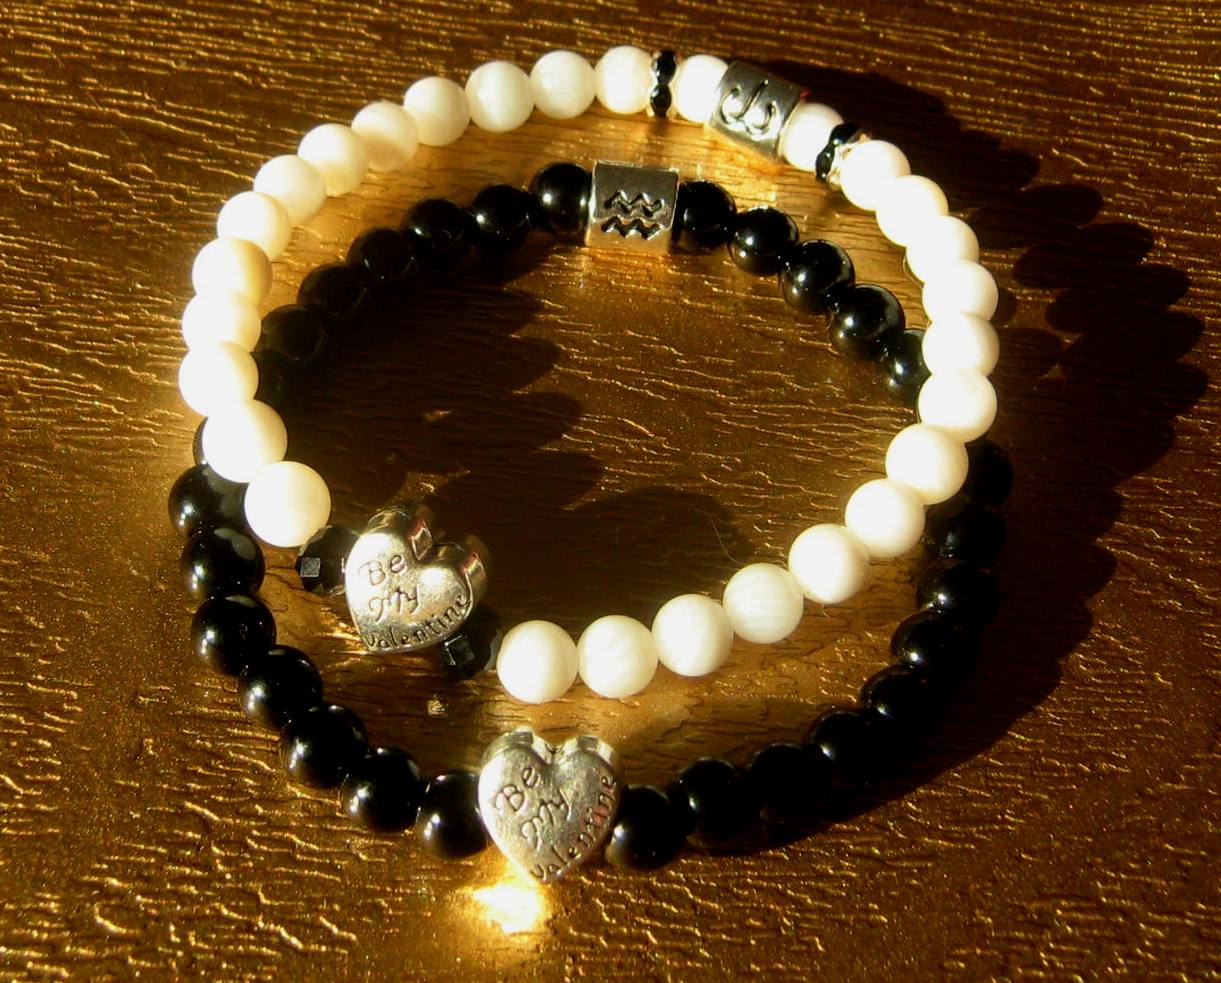 Engagement COUPLE stone Bracelets "Be my Valentine", Heart LOVE, Handmade bracelet men women couple gift